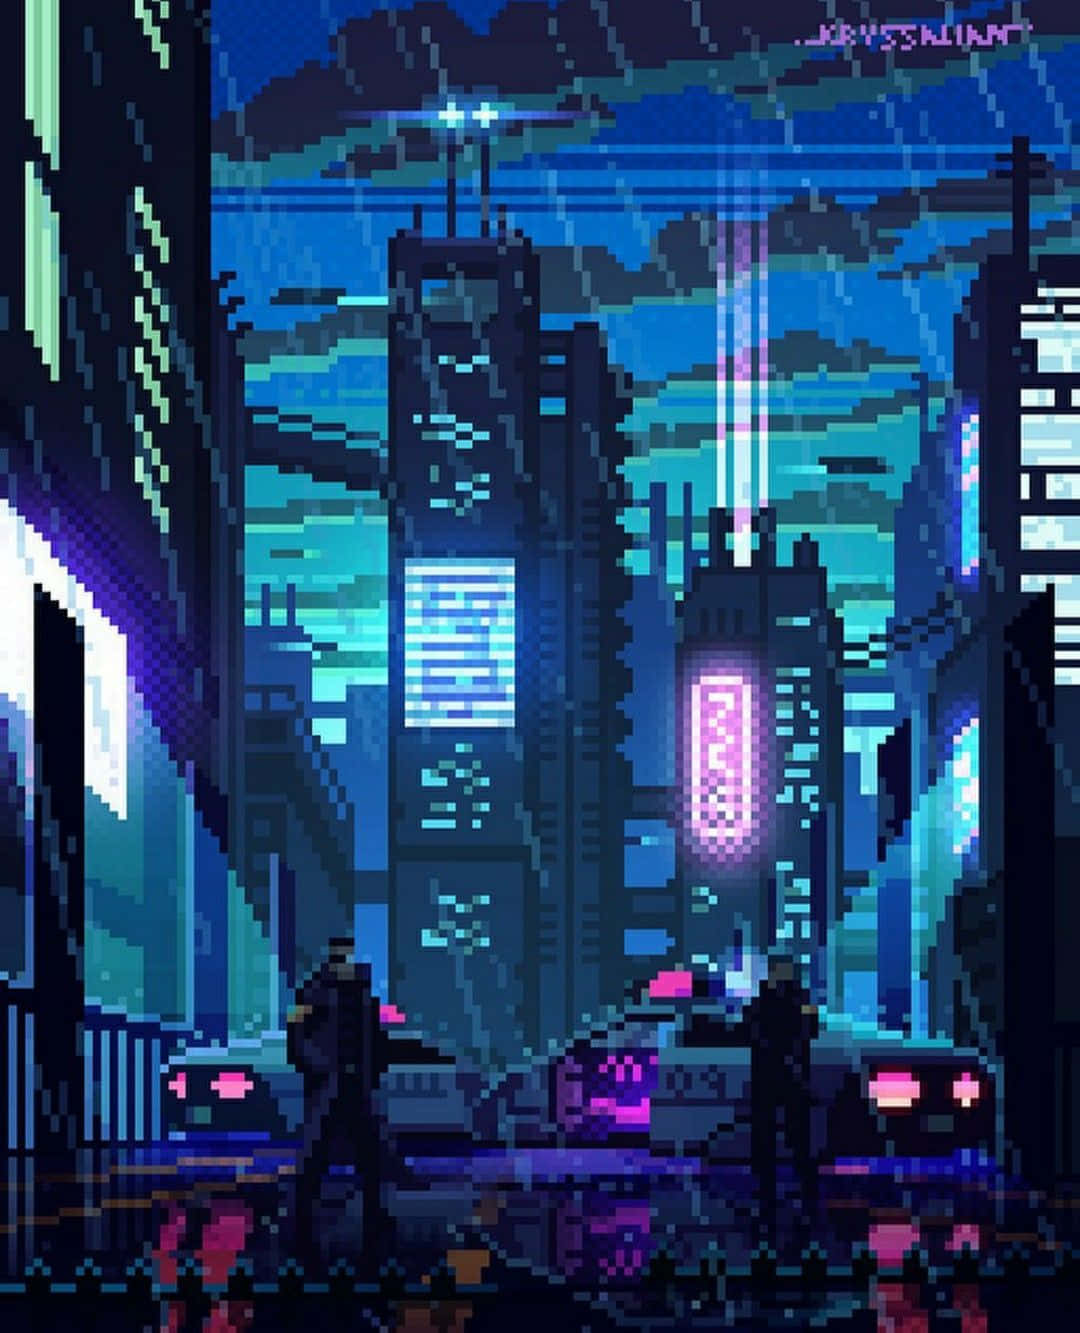 Cyberpunk pixelkunst inspireret af det klassiske 80'er pixel look. Wallpaper